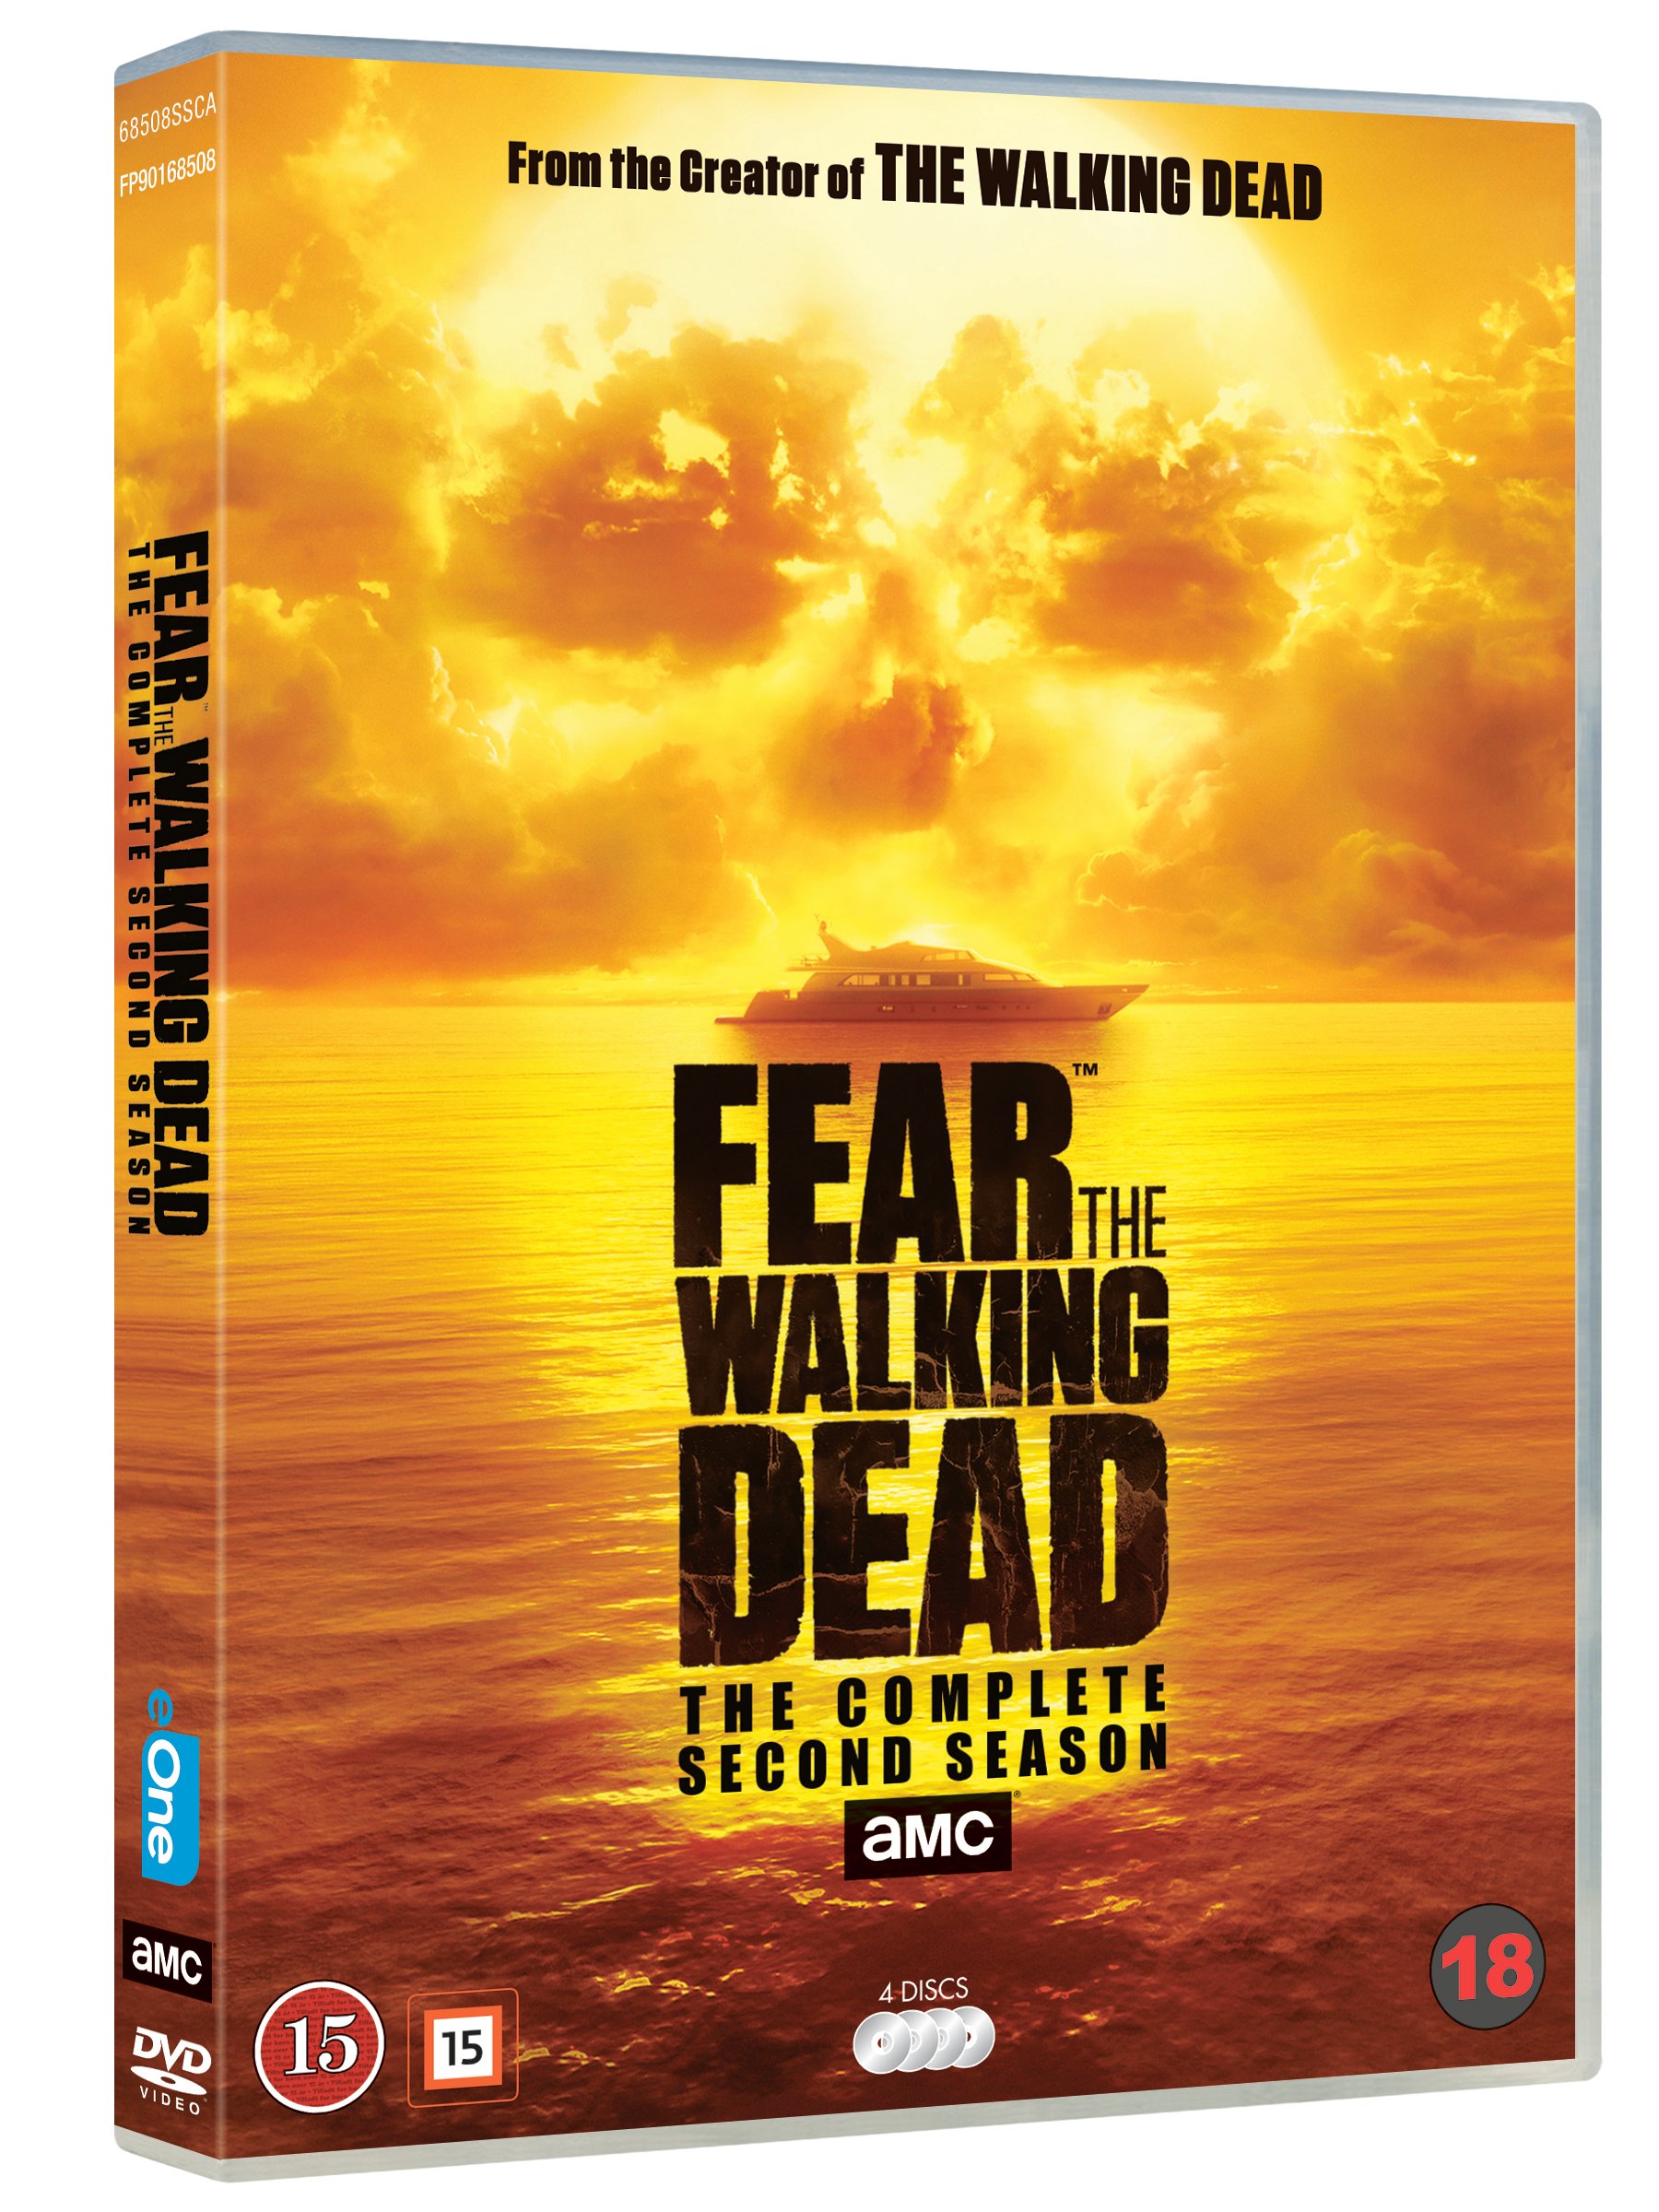 the walking dead season two dvd